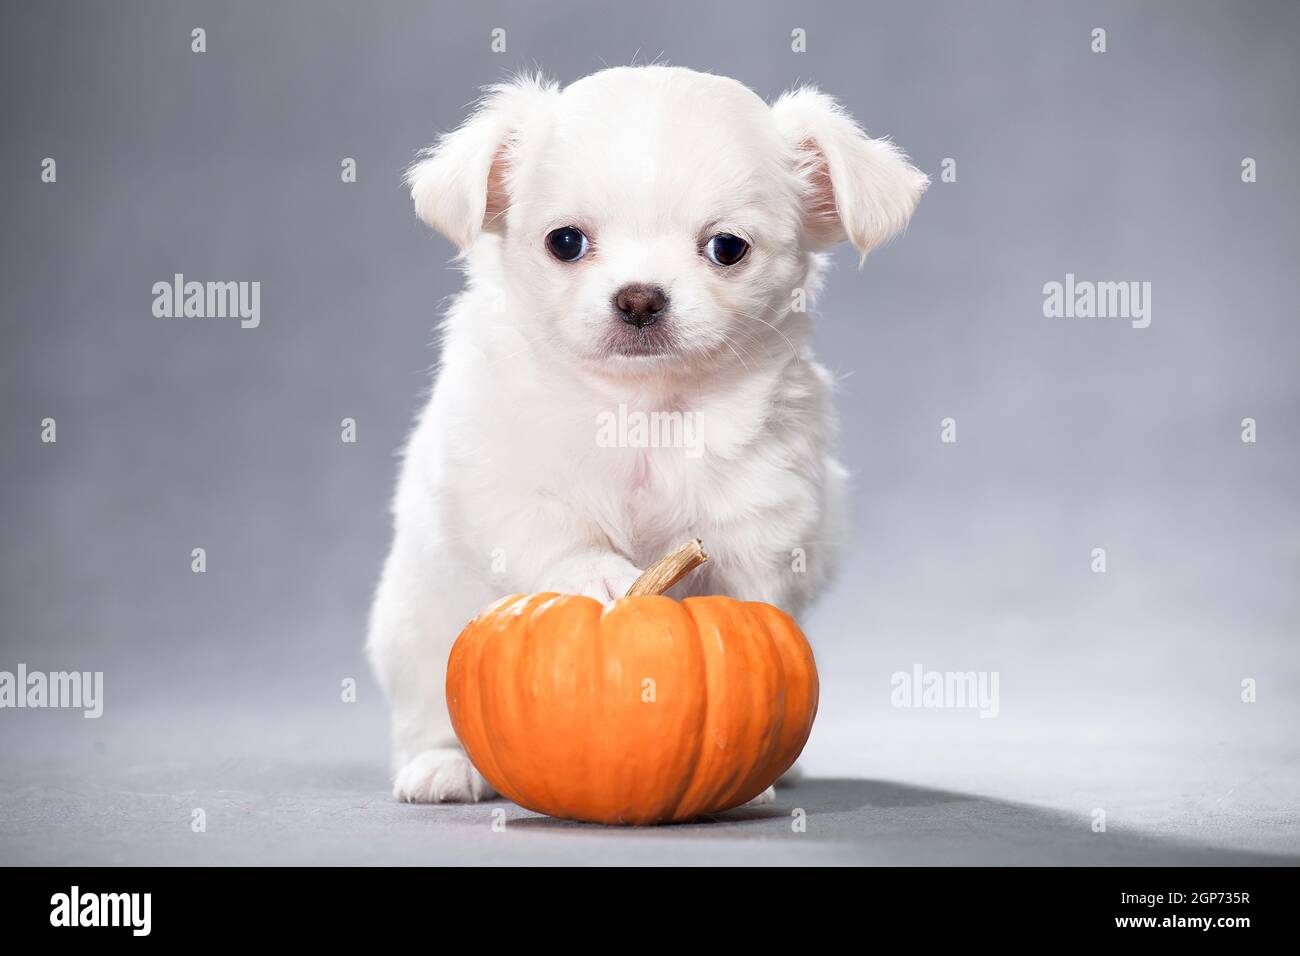 Bianco soffice cucciolo di razza Chihuahua si erge su una zucca arancione, su uno sfondo grigio in uno studio al chiuso Foto Stock